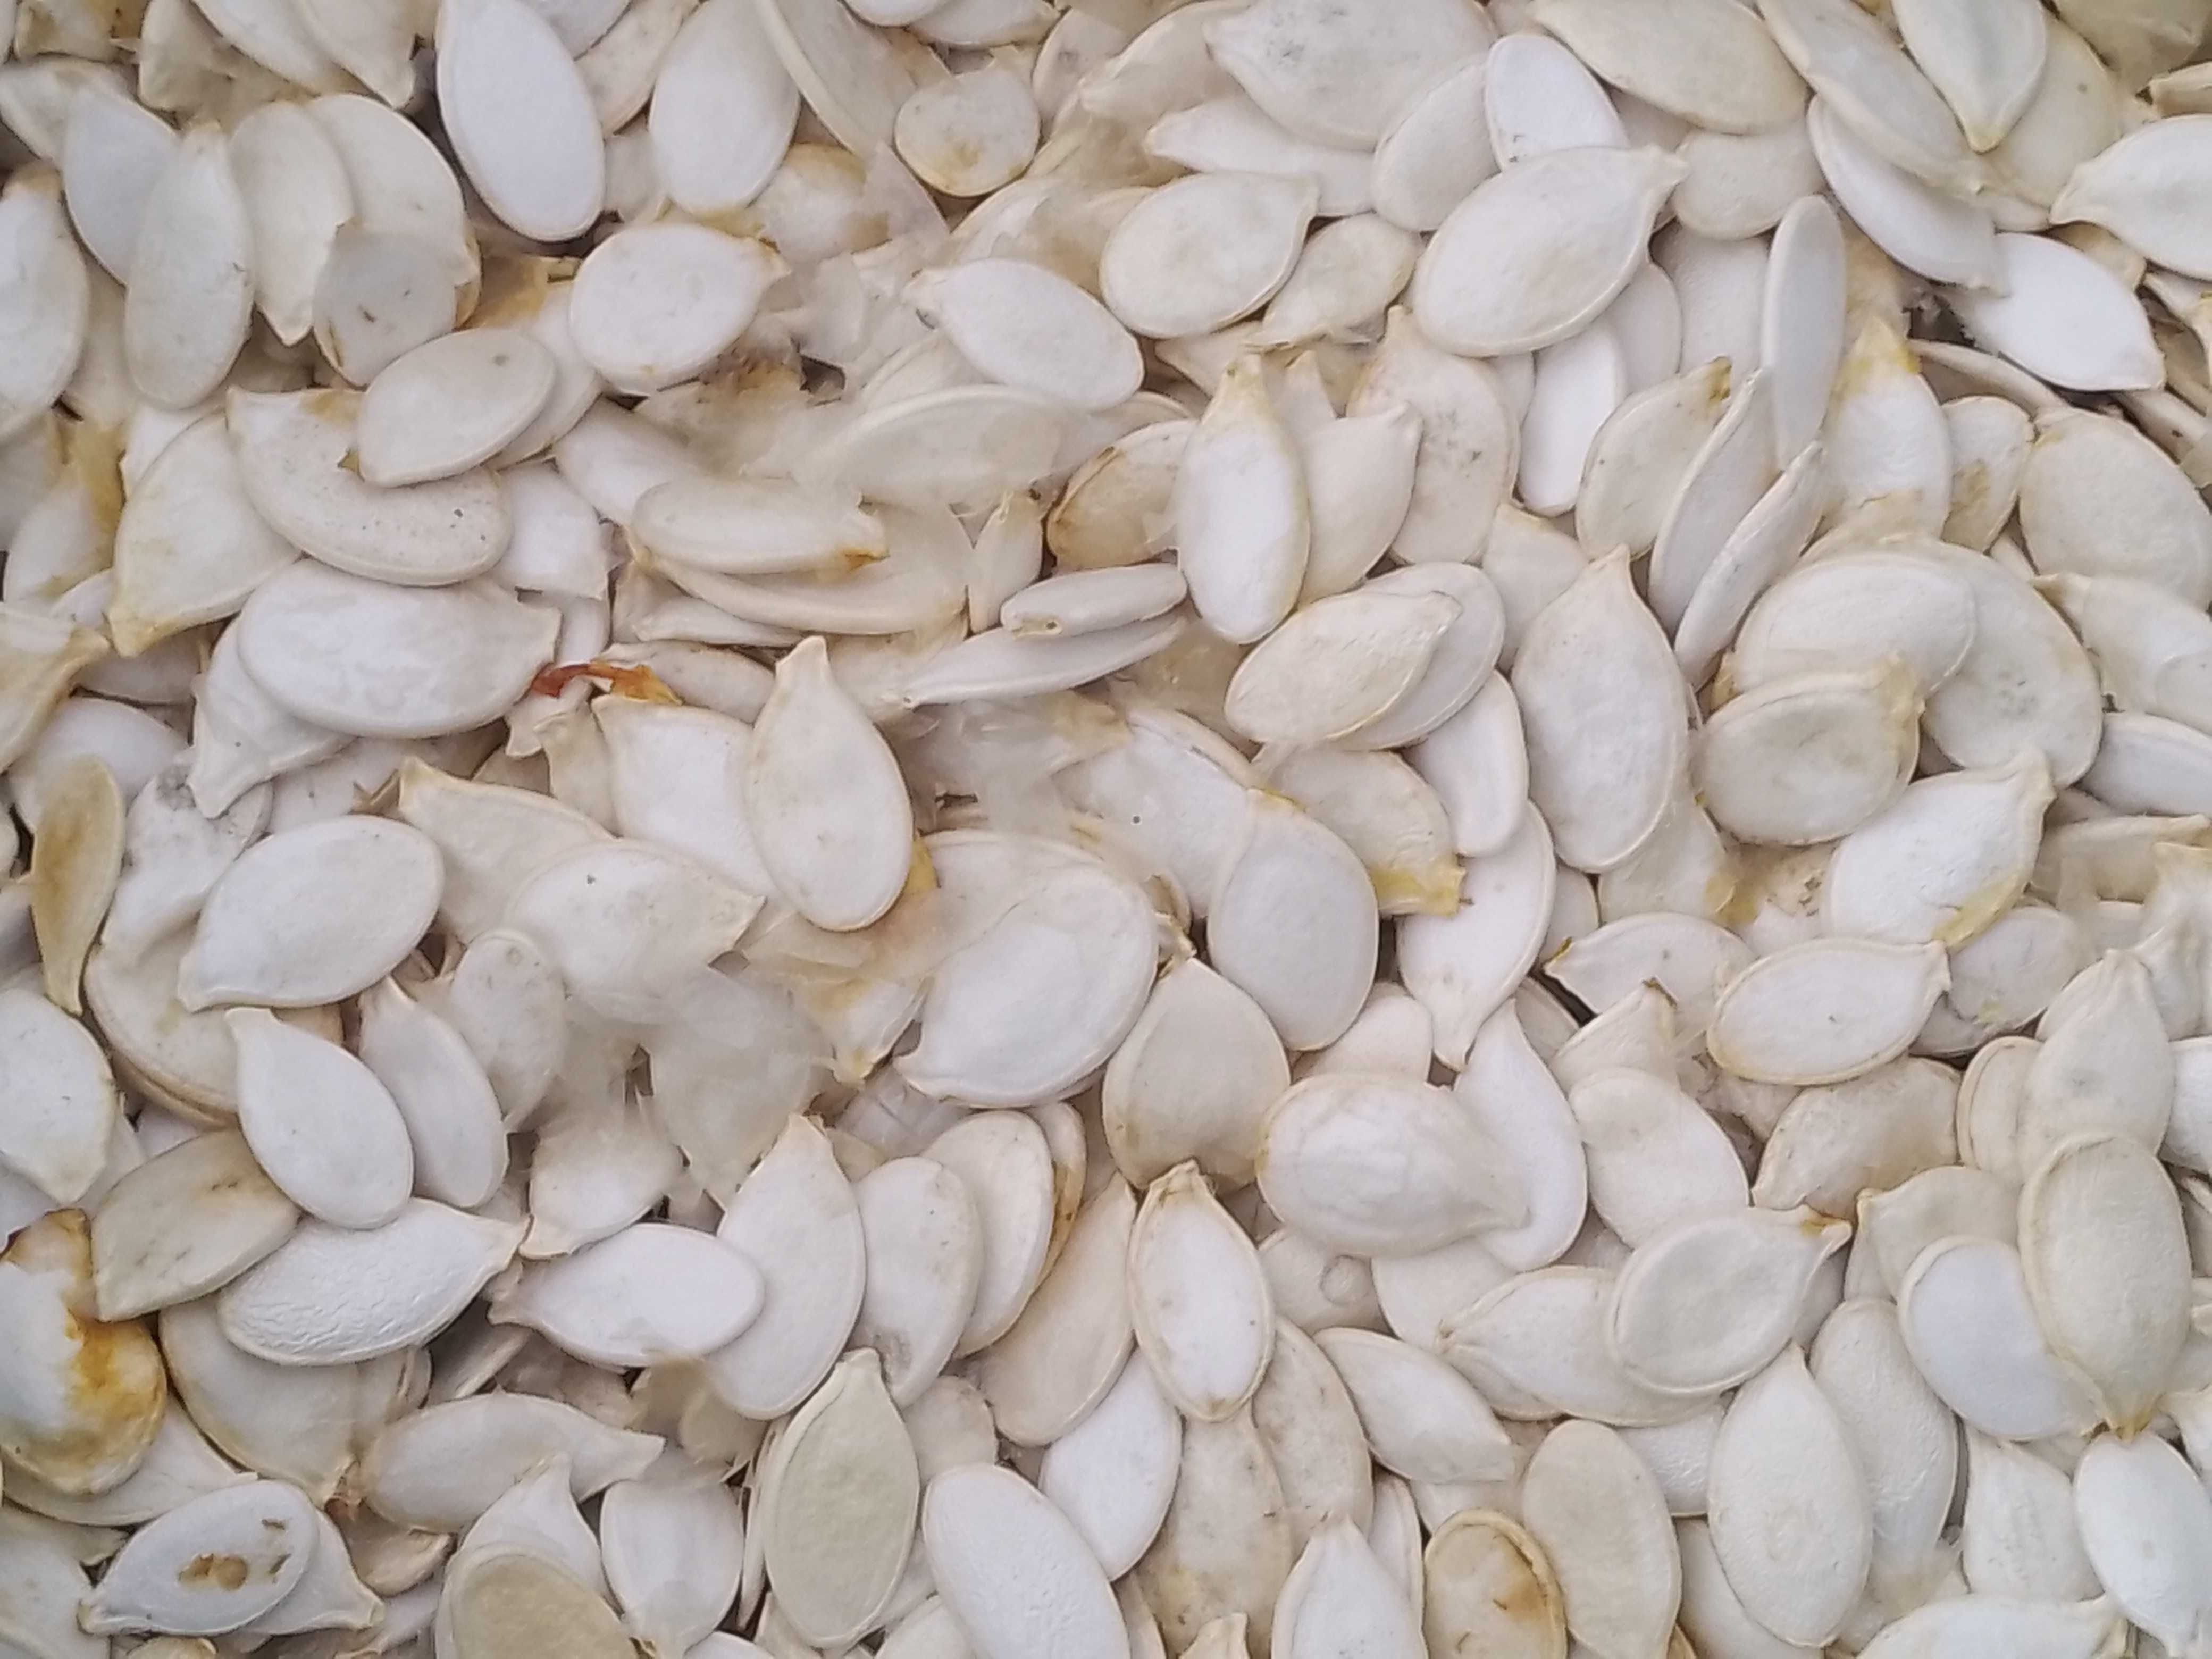 Продам насіння гарбуза білій кашові